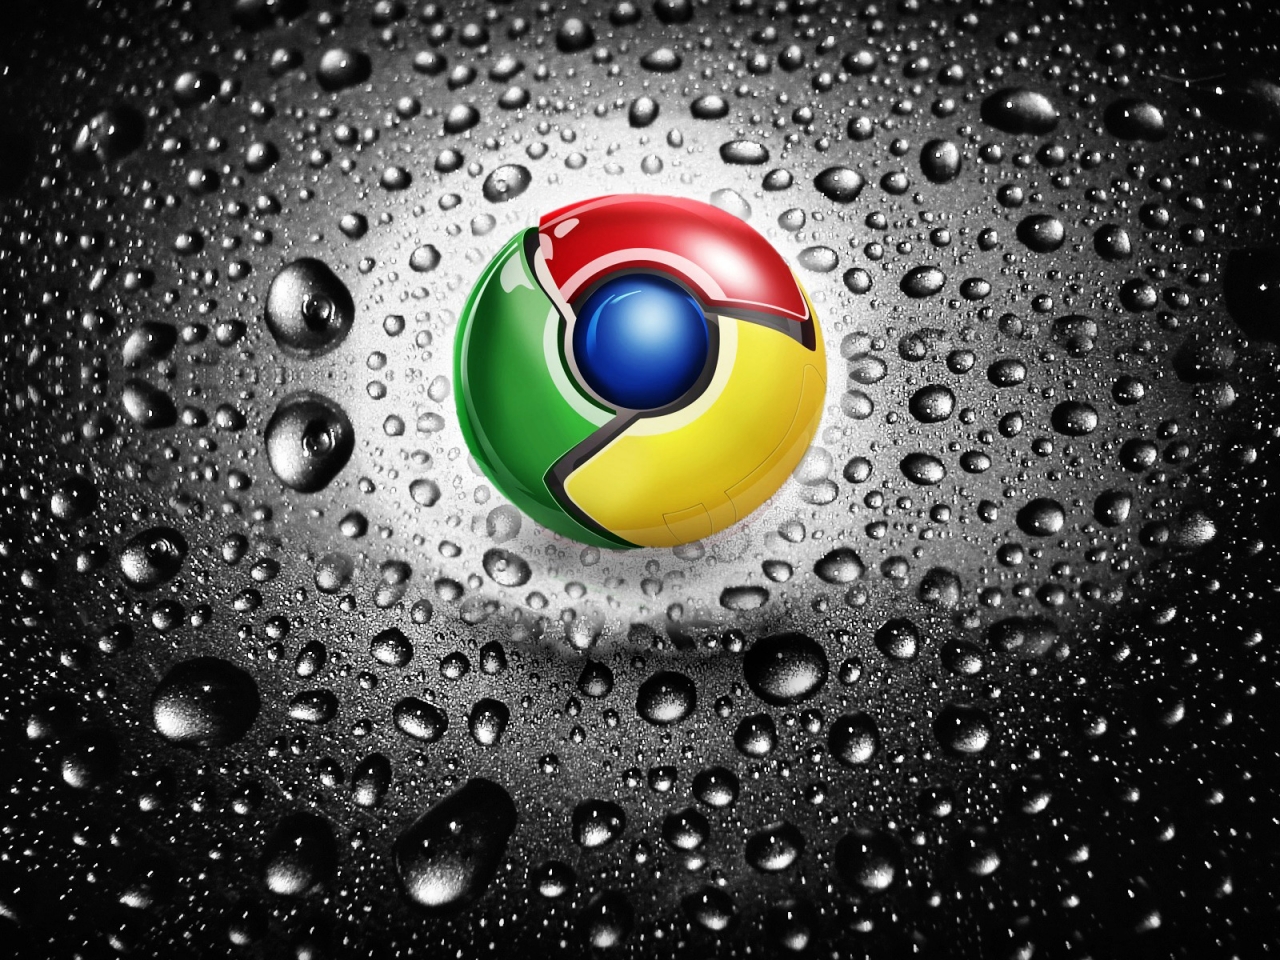 Google Chrome for 1280 x 960 resolution